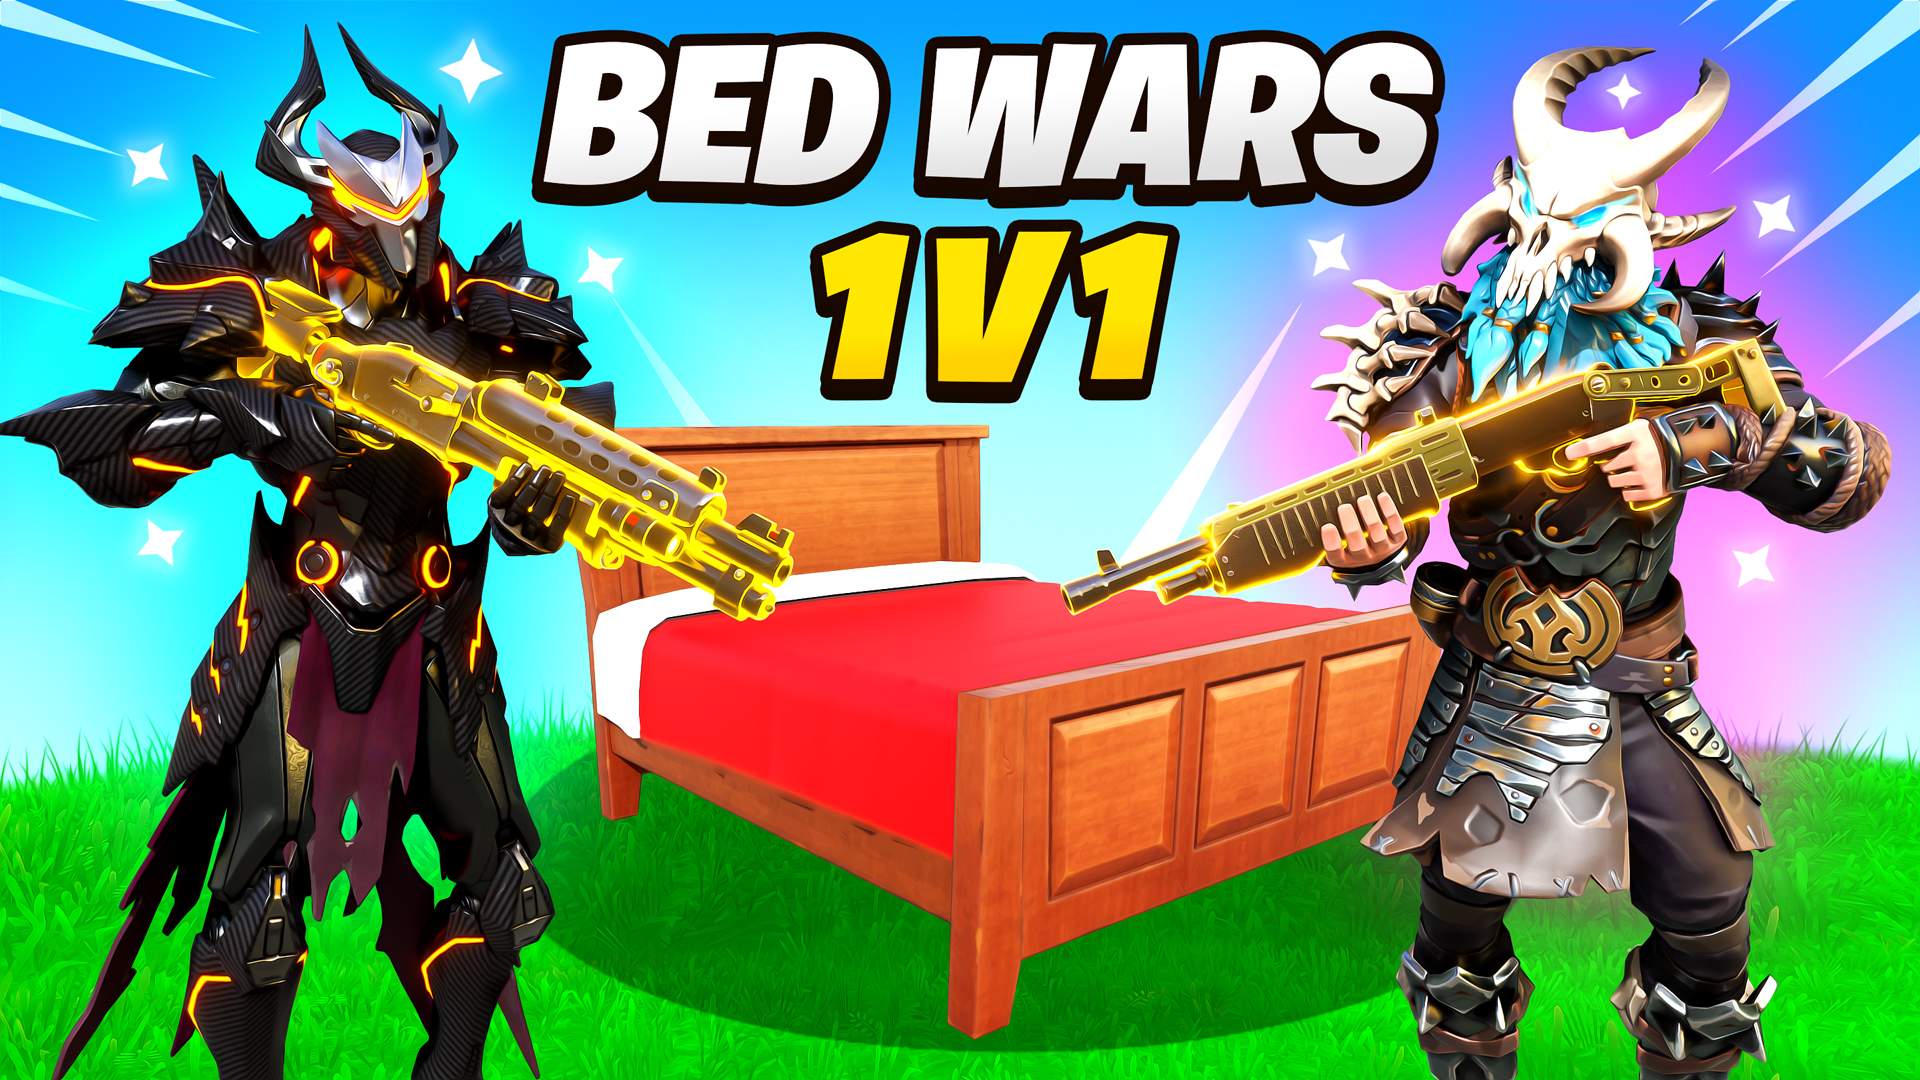 FORTNITE 1v1v1v1 Bed Wars SKY BATTLE Challenge! 